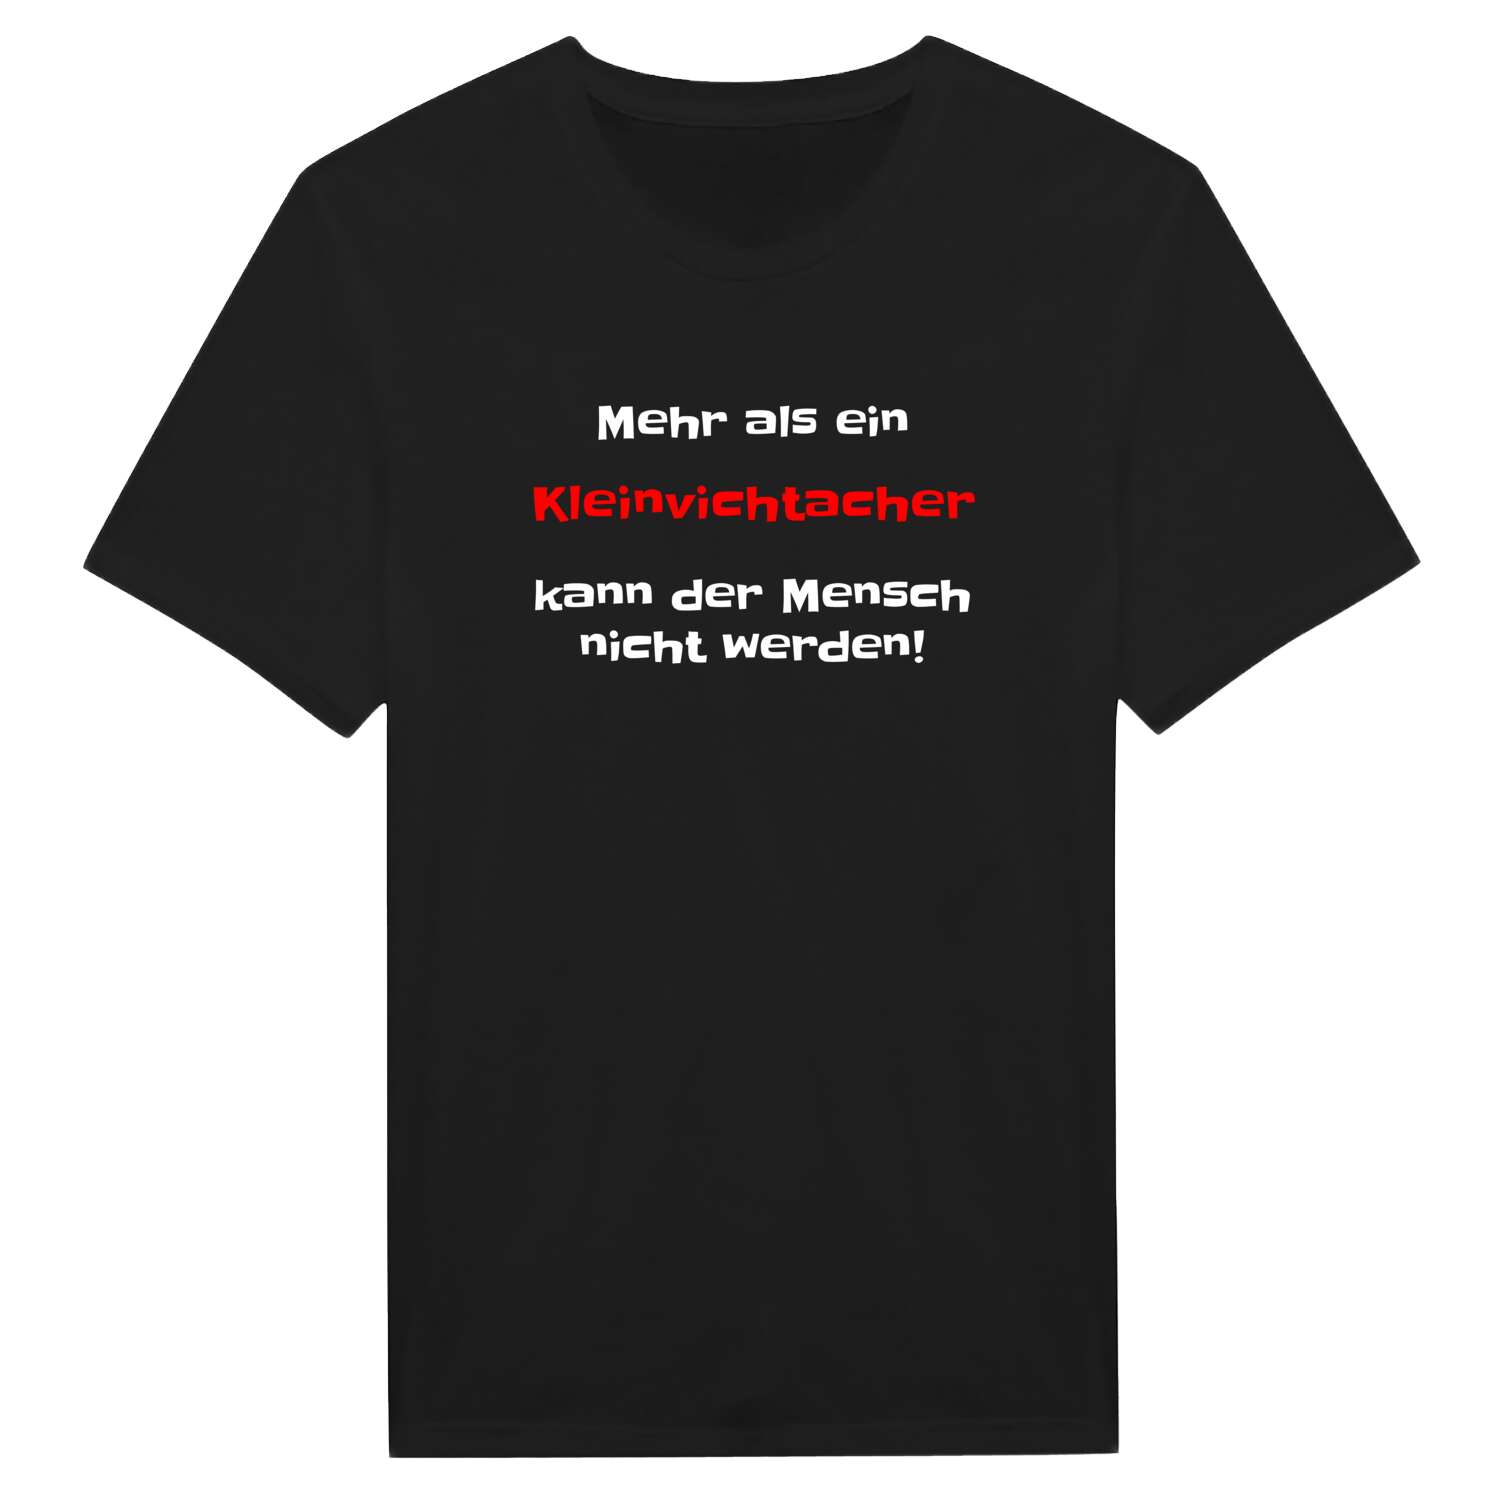 Kleinvichtach T-Shirt »Mehr als ein«